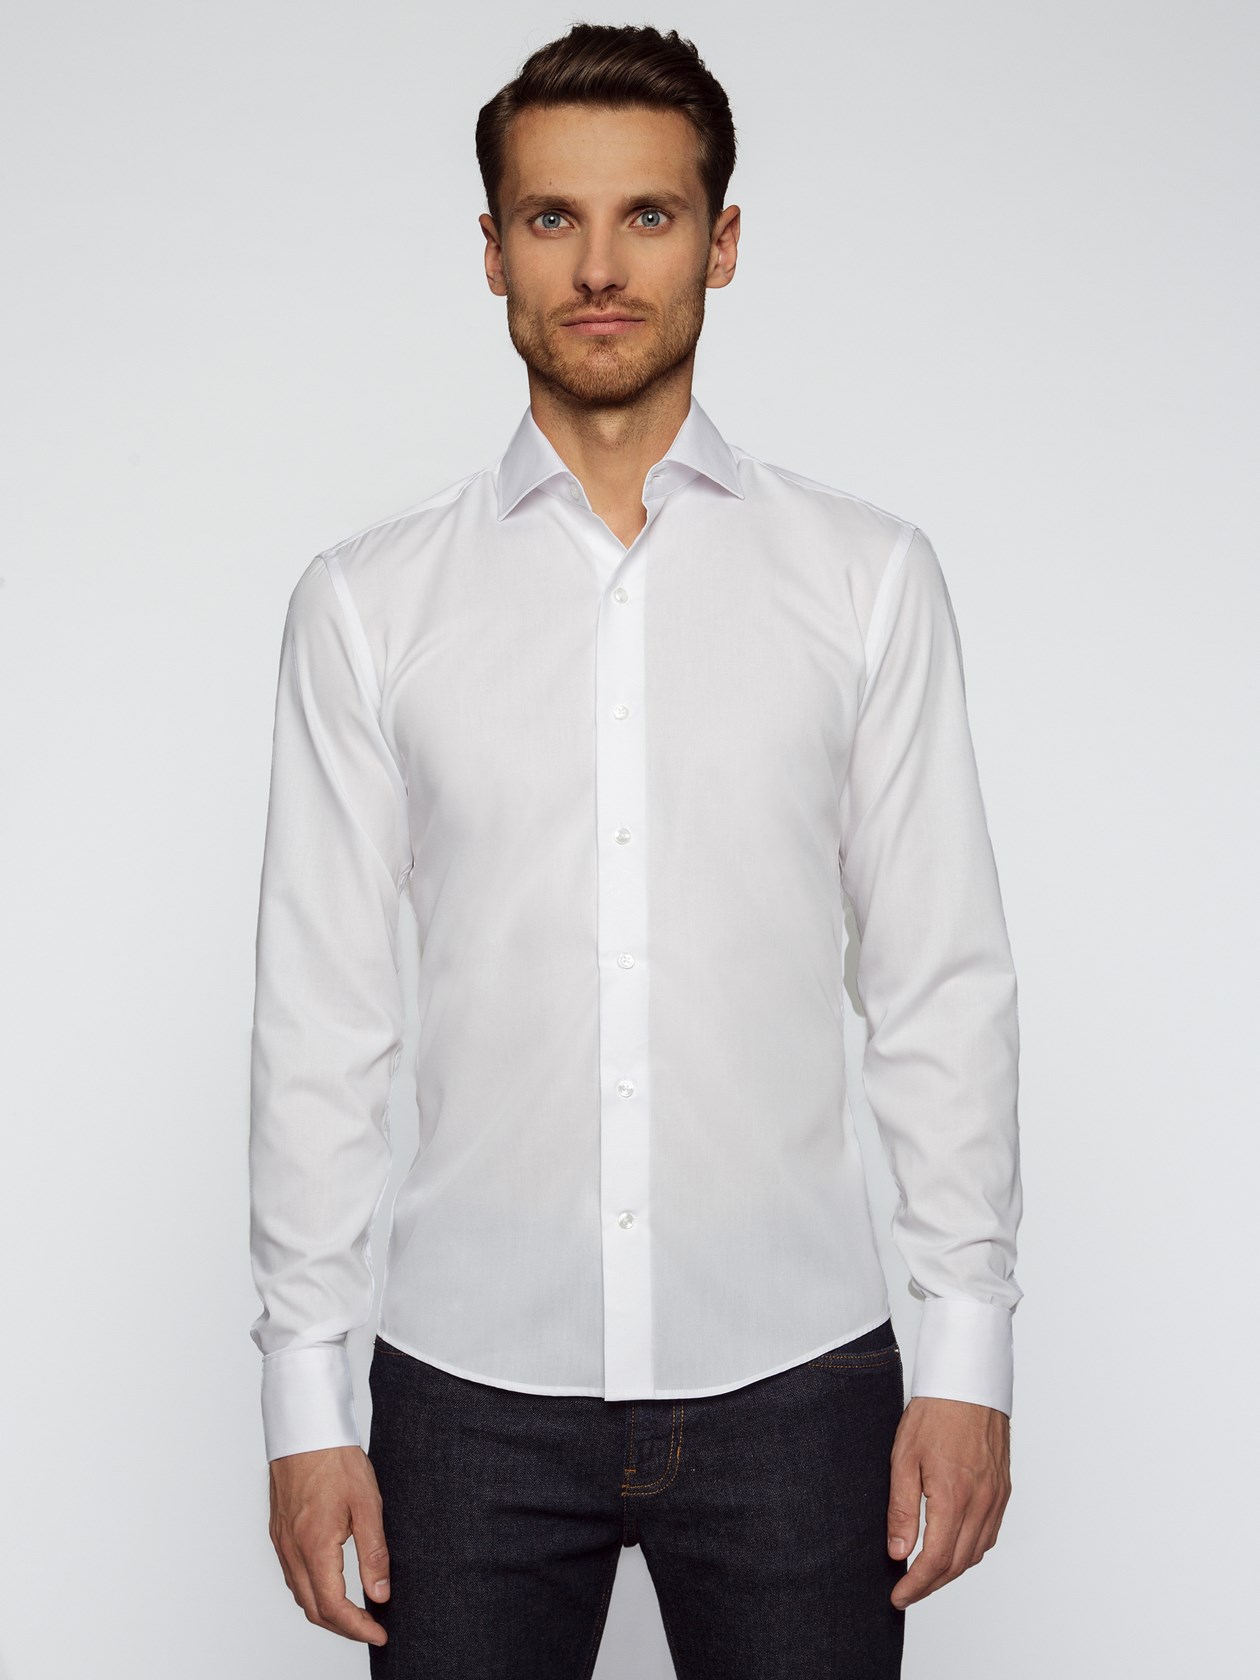 Camisa sob medida em algodão pima - branco